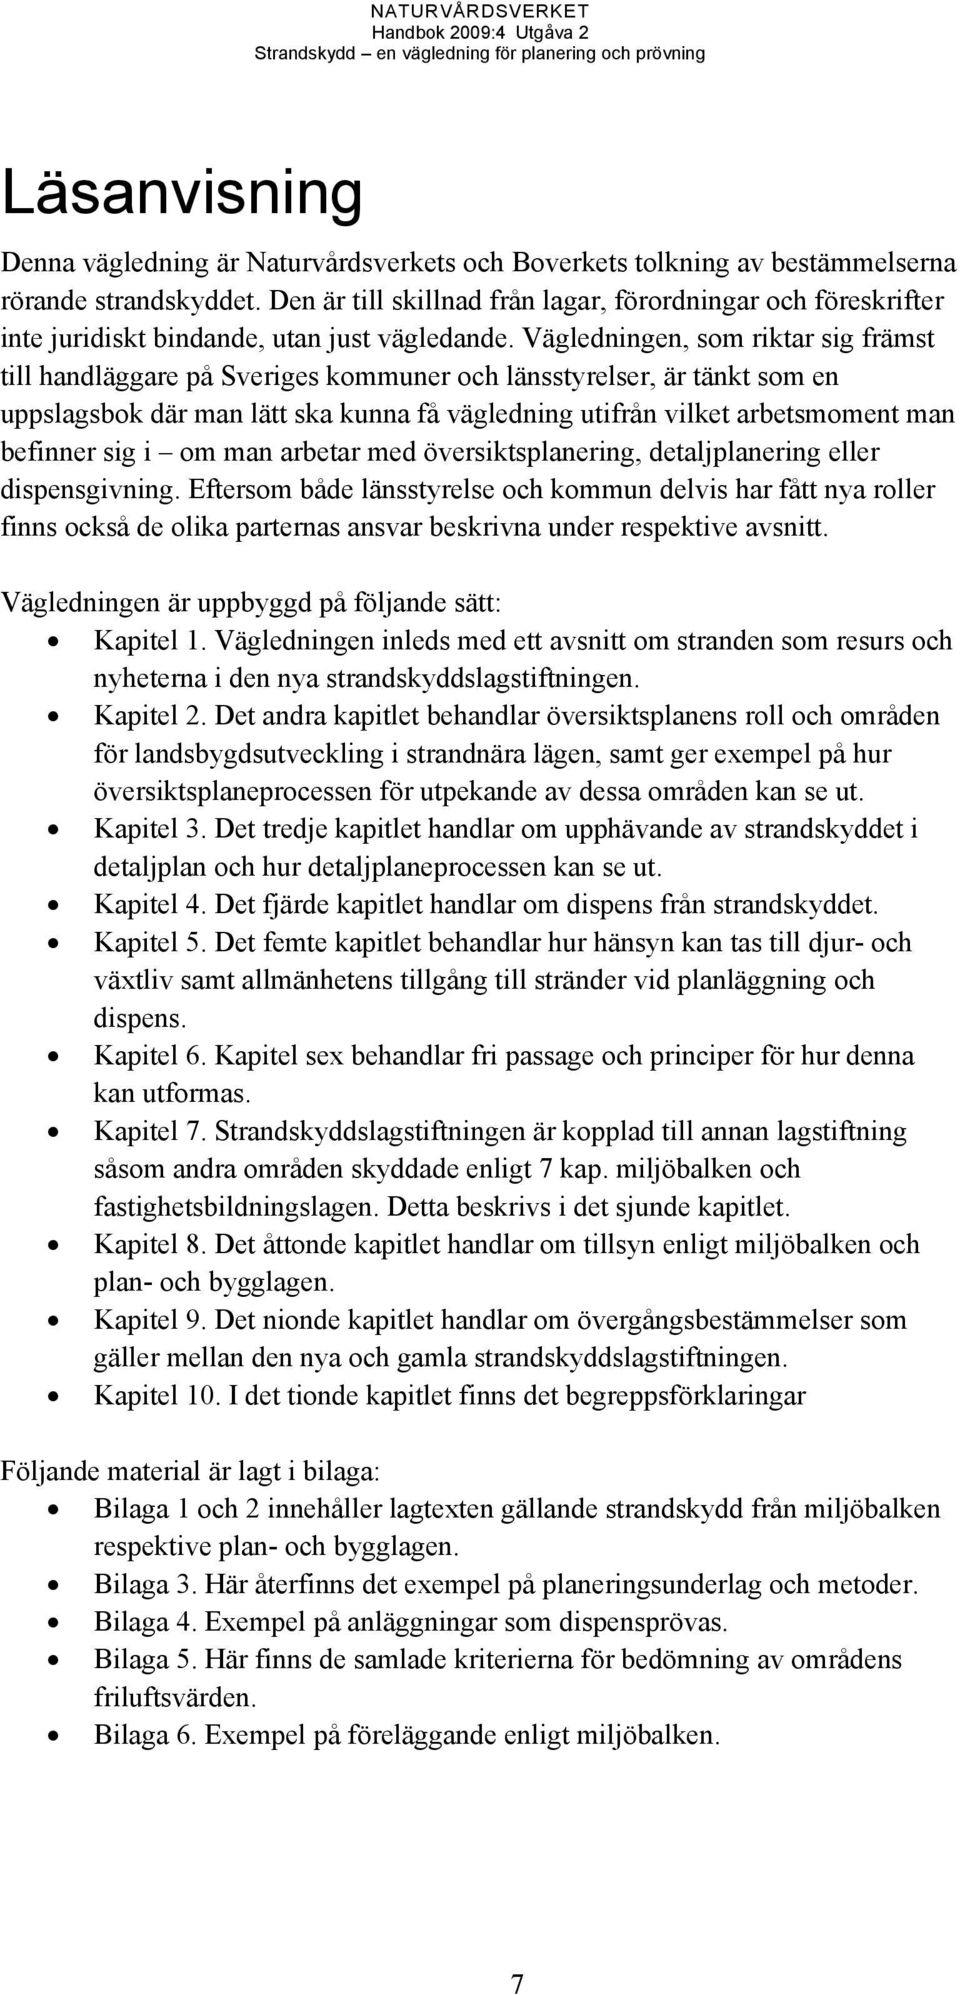 Vägledningen, som riktar sig främst till handläggare på Sveriges kommuner och länsstyrelser, är tänkt som en uppslagsbok där man lätt ska kunna få vägledning utifrån vilket arbetsmoment man befinner